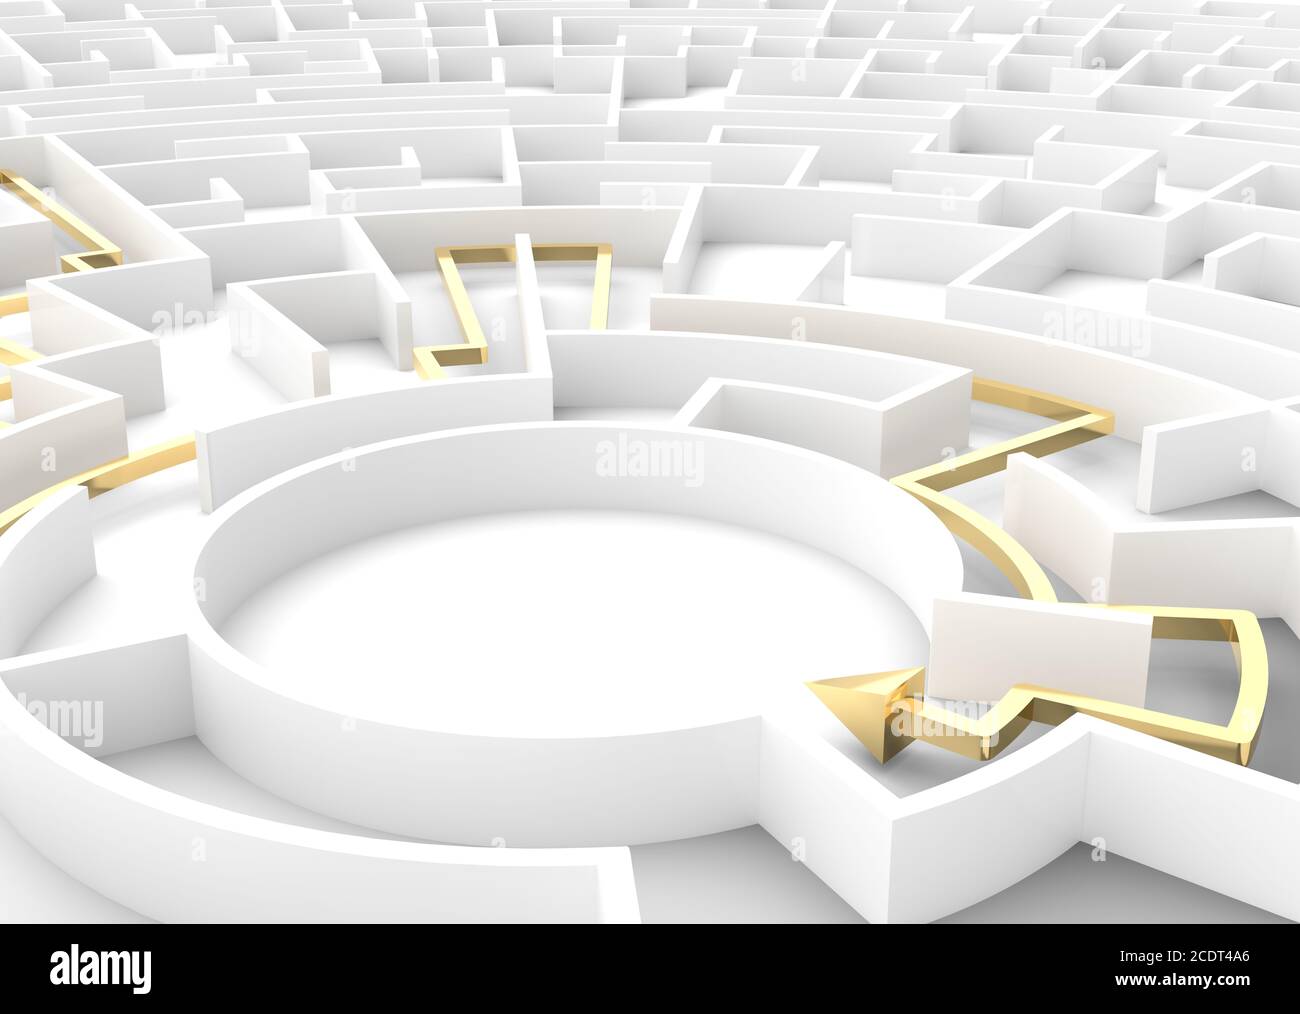 Flèche or passant par le labyrinthe montrant une solution. Concepts de stratégie d'entreprise. Banque D'Images